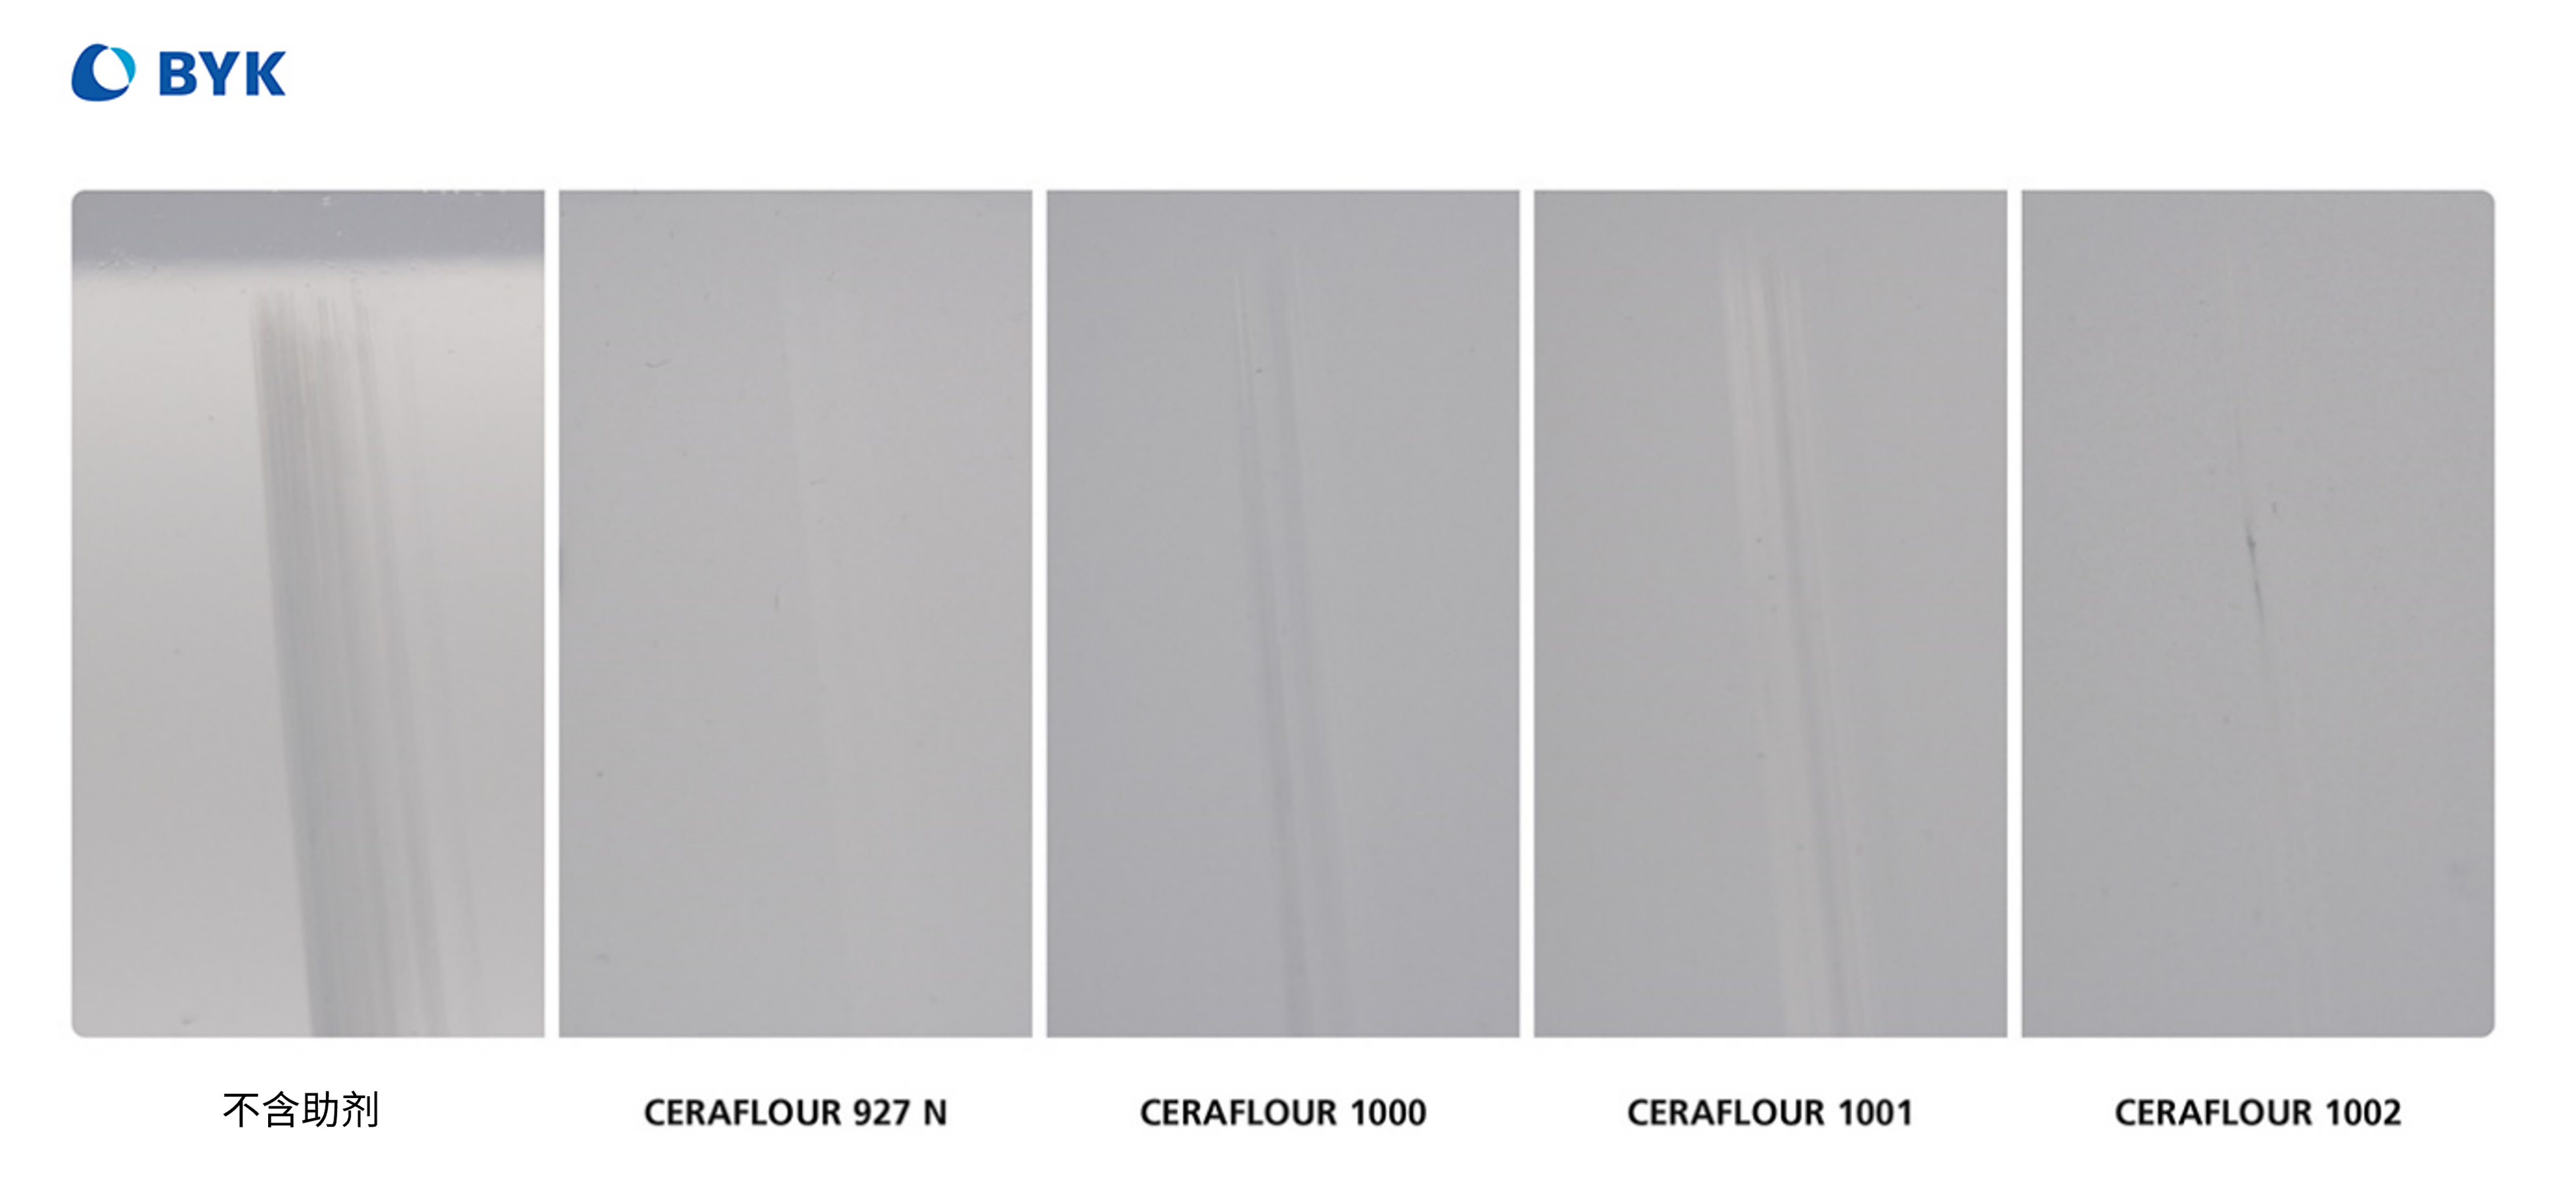 与高密度聚乙烯（ HDPE） 蜡助剂 (CERAFLOUR 927 N) 相比，改进了抗抛光性